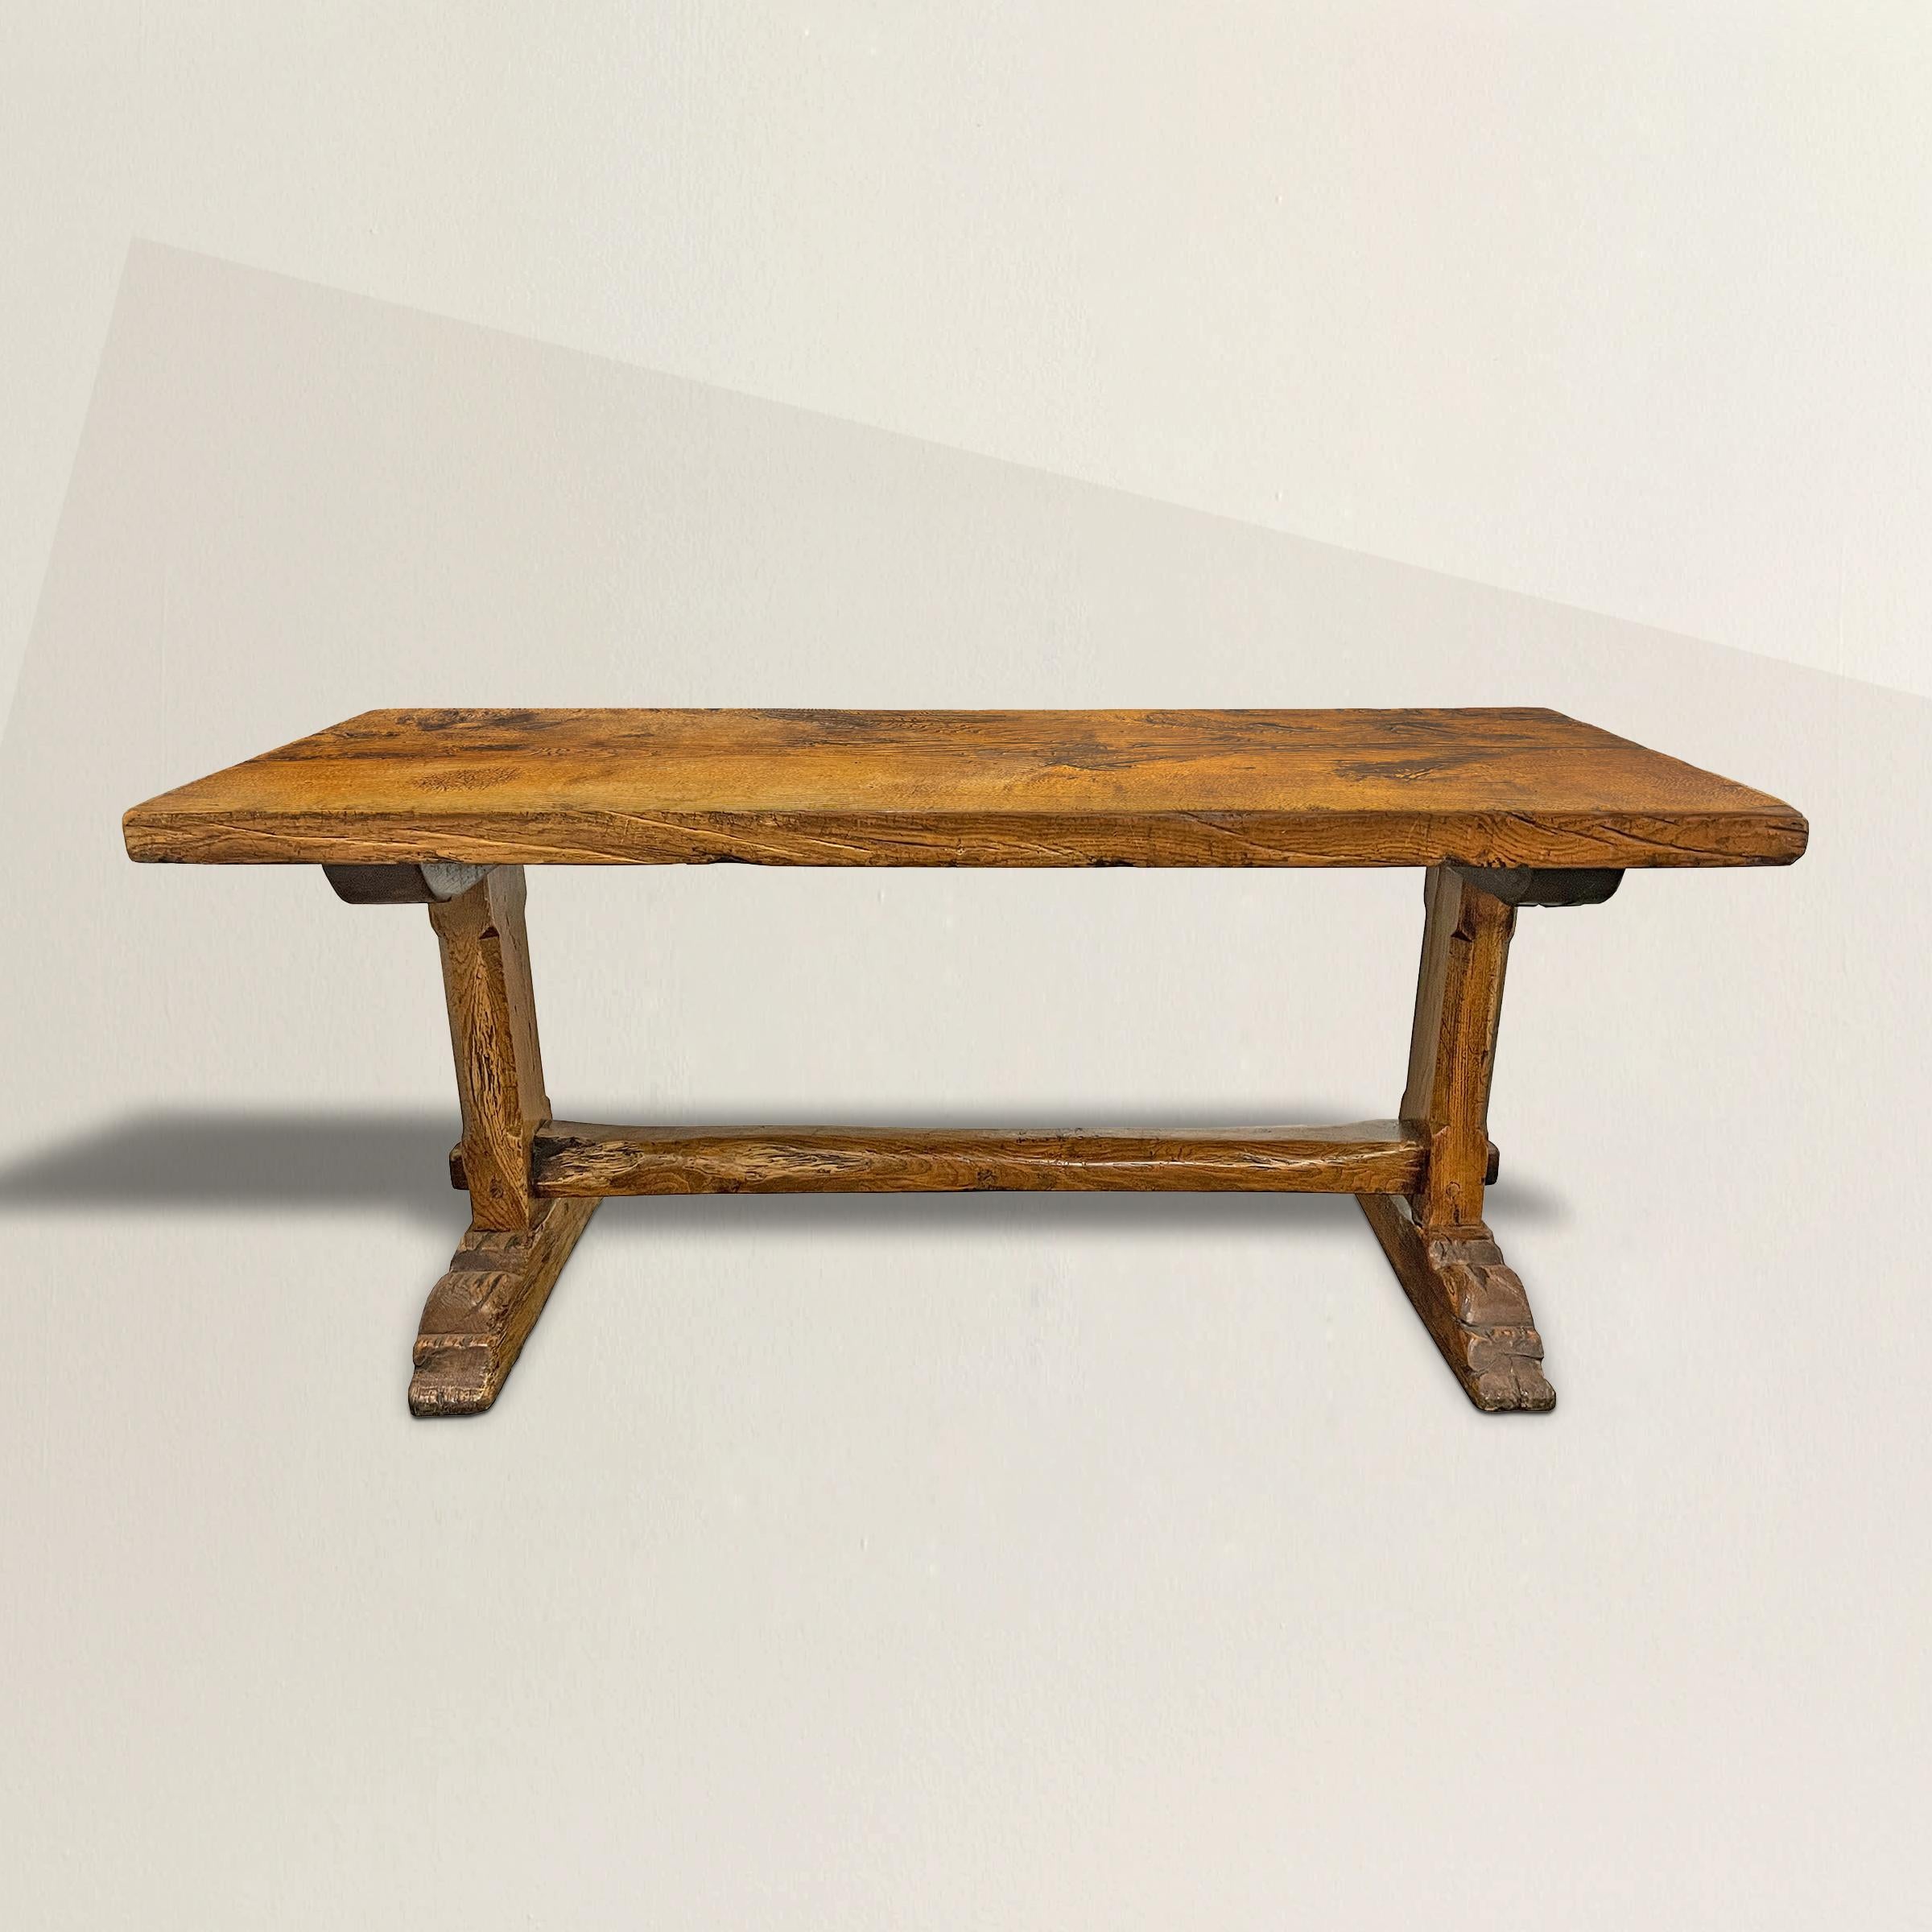 La meilleure table à tréteaux en chêne français du début du XVIIIe siècle, avec un plateau de trois pouces d'épaisseur, taillé à la main, reposant sur une base à tréteaux sculptée à la main, avec des jambes chanfreinées et des pieds bien usés. La